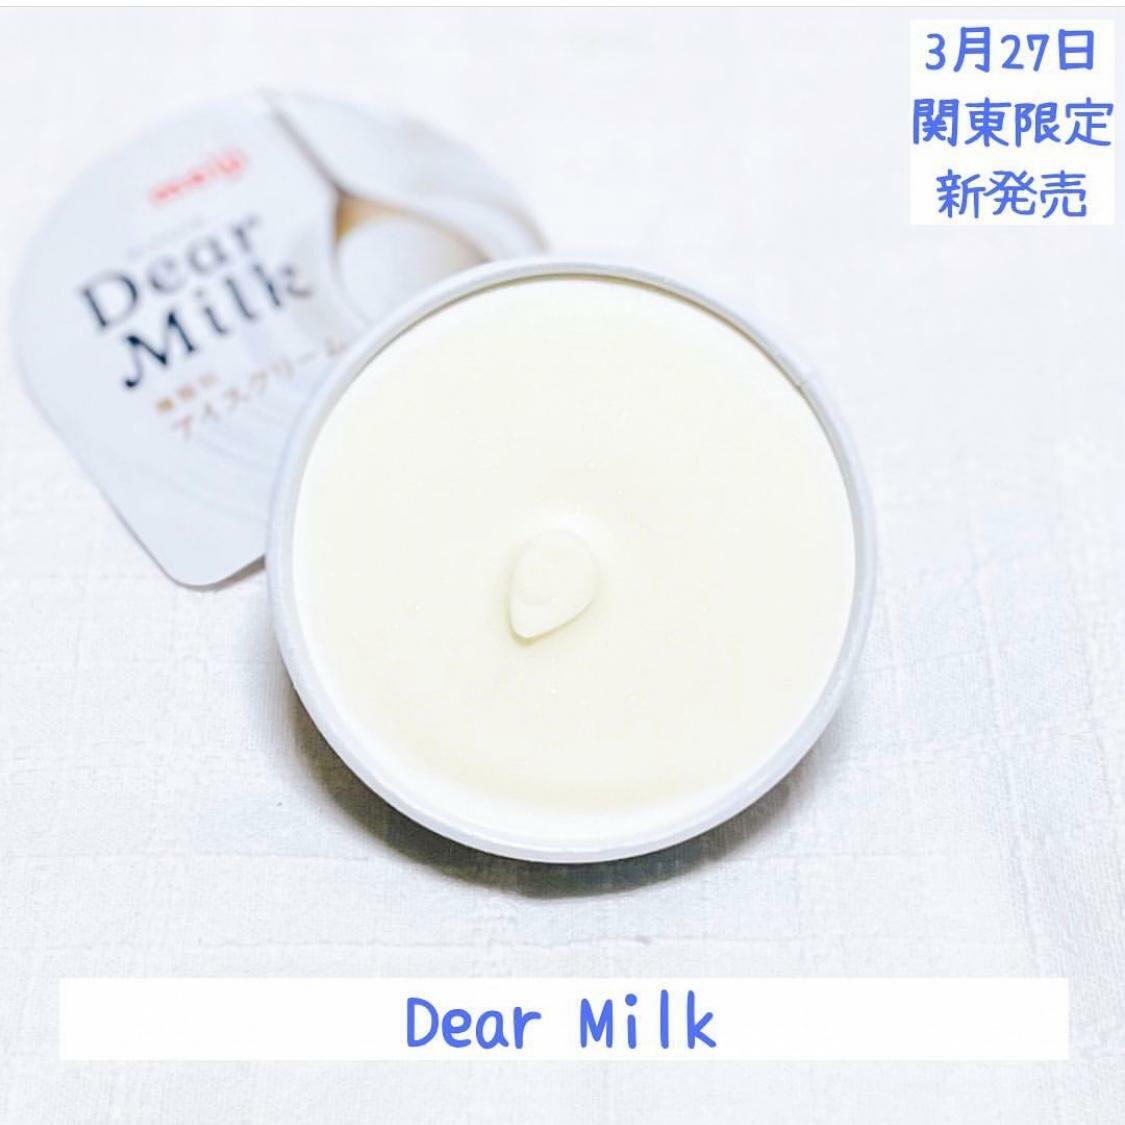 Dear Milk